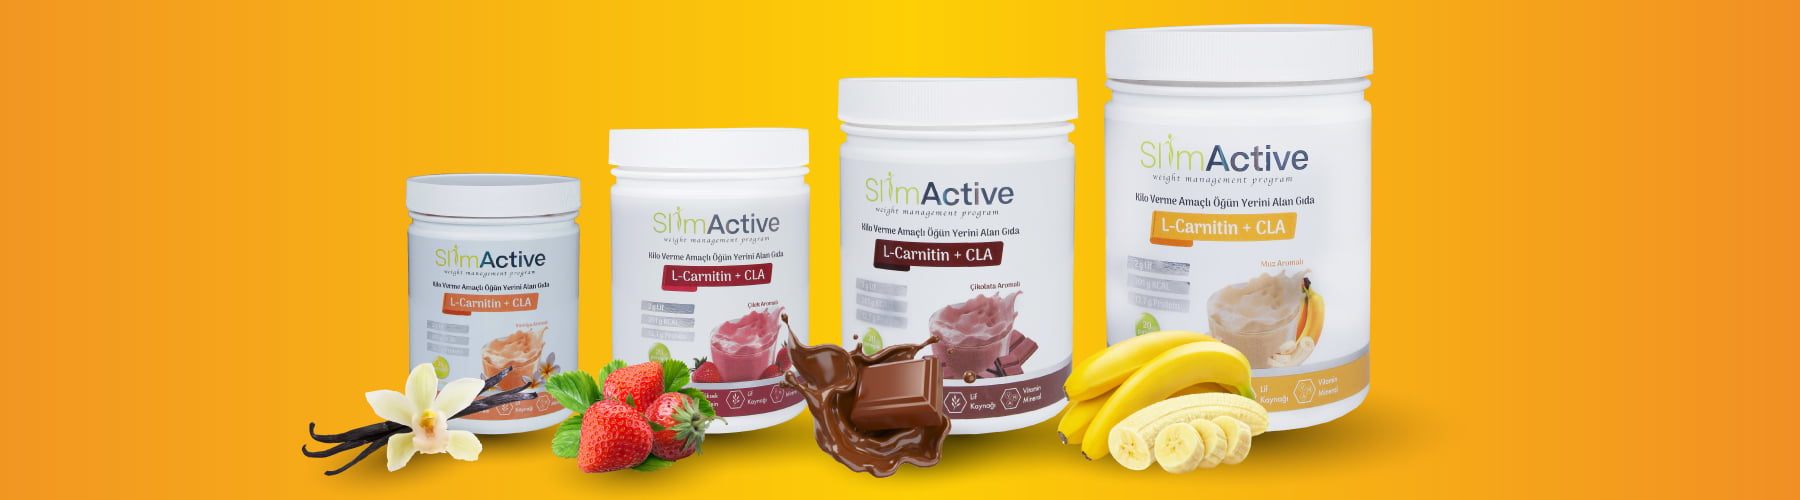 Slim Active bir kilo kontrol ürünüdür.